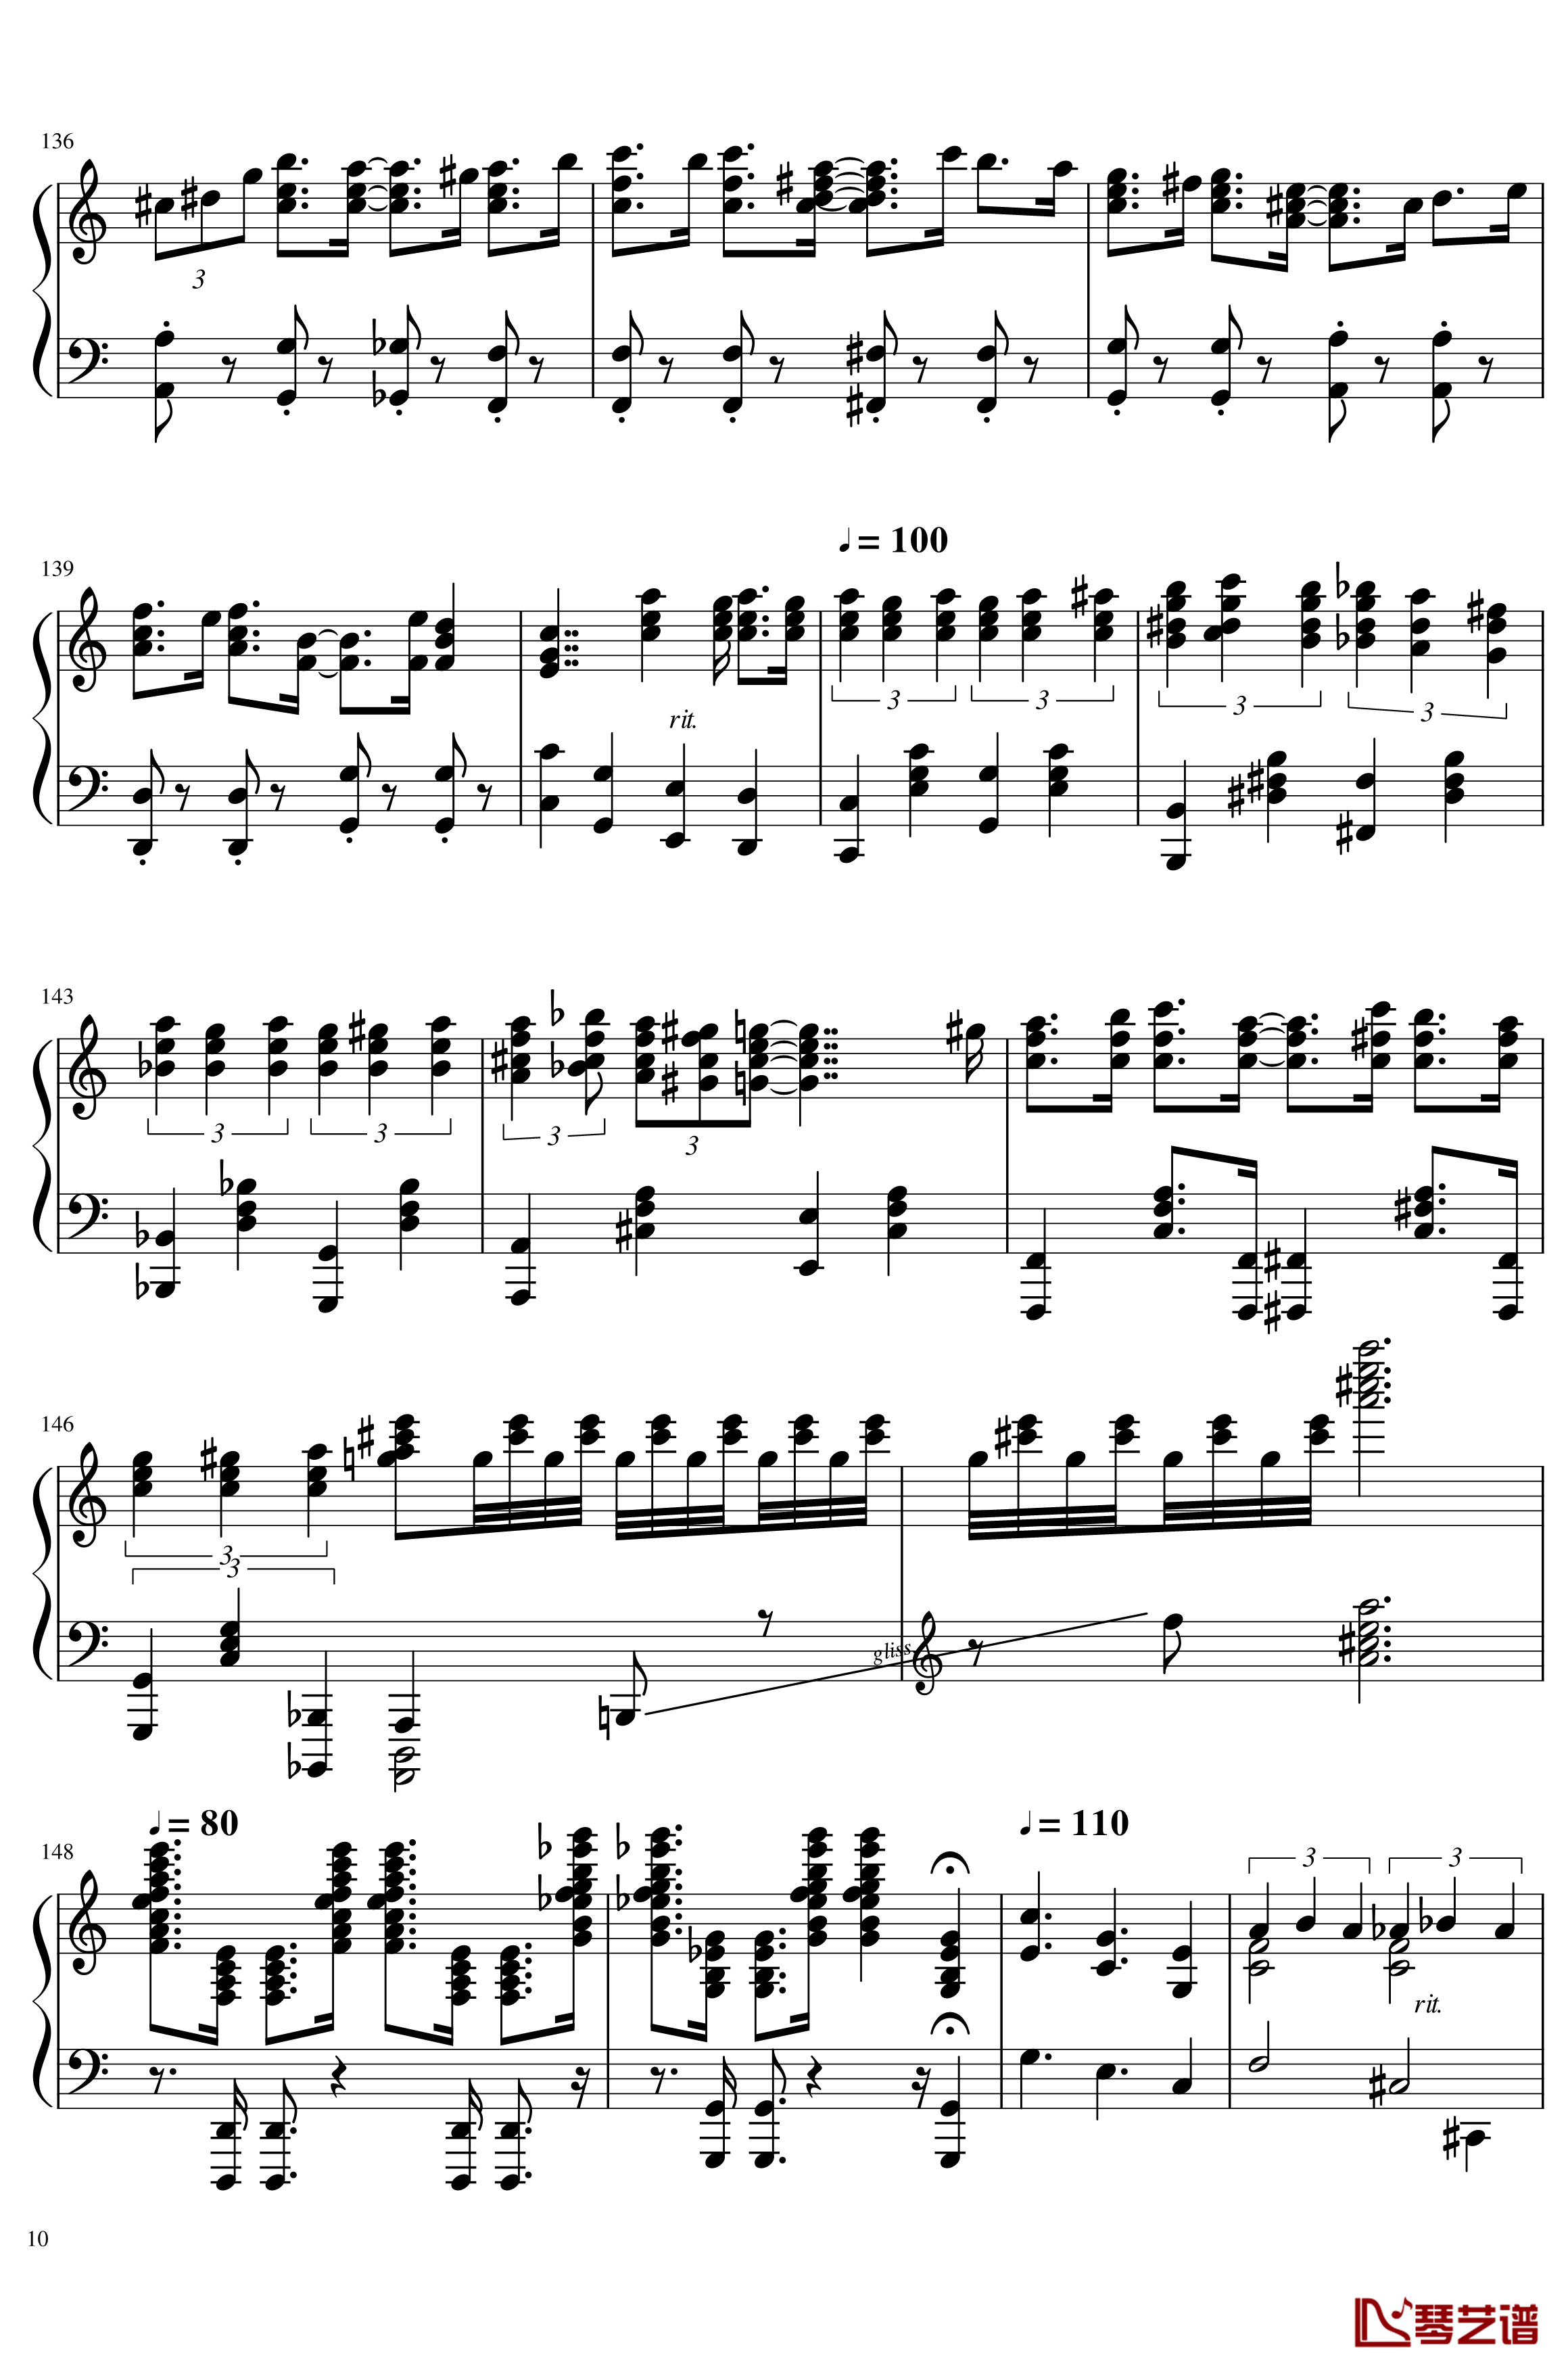 马里奥合集-Mix钢琴谱-超级玛丽10